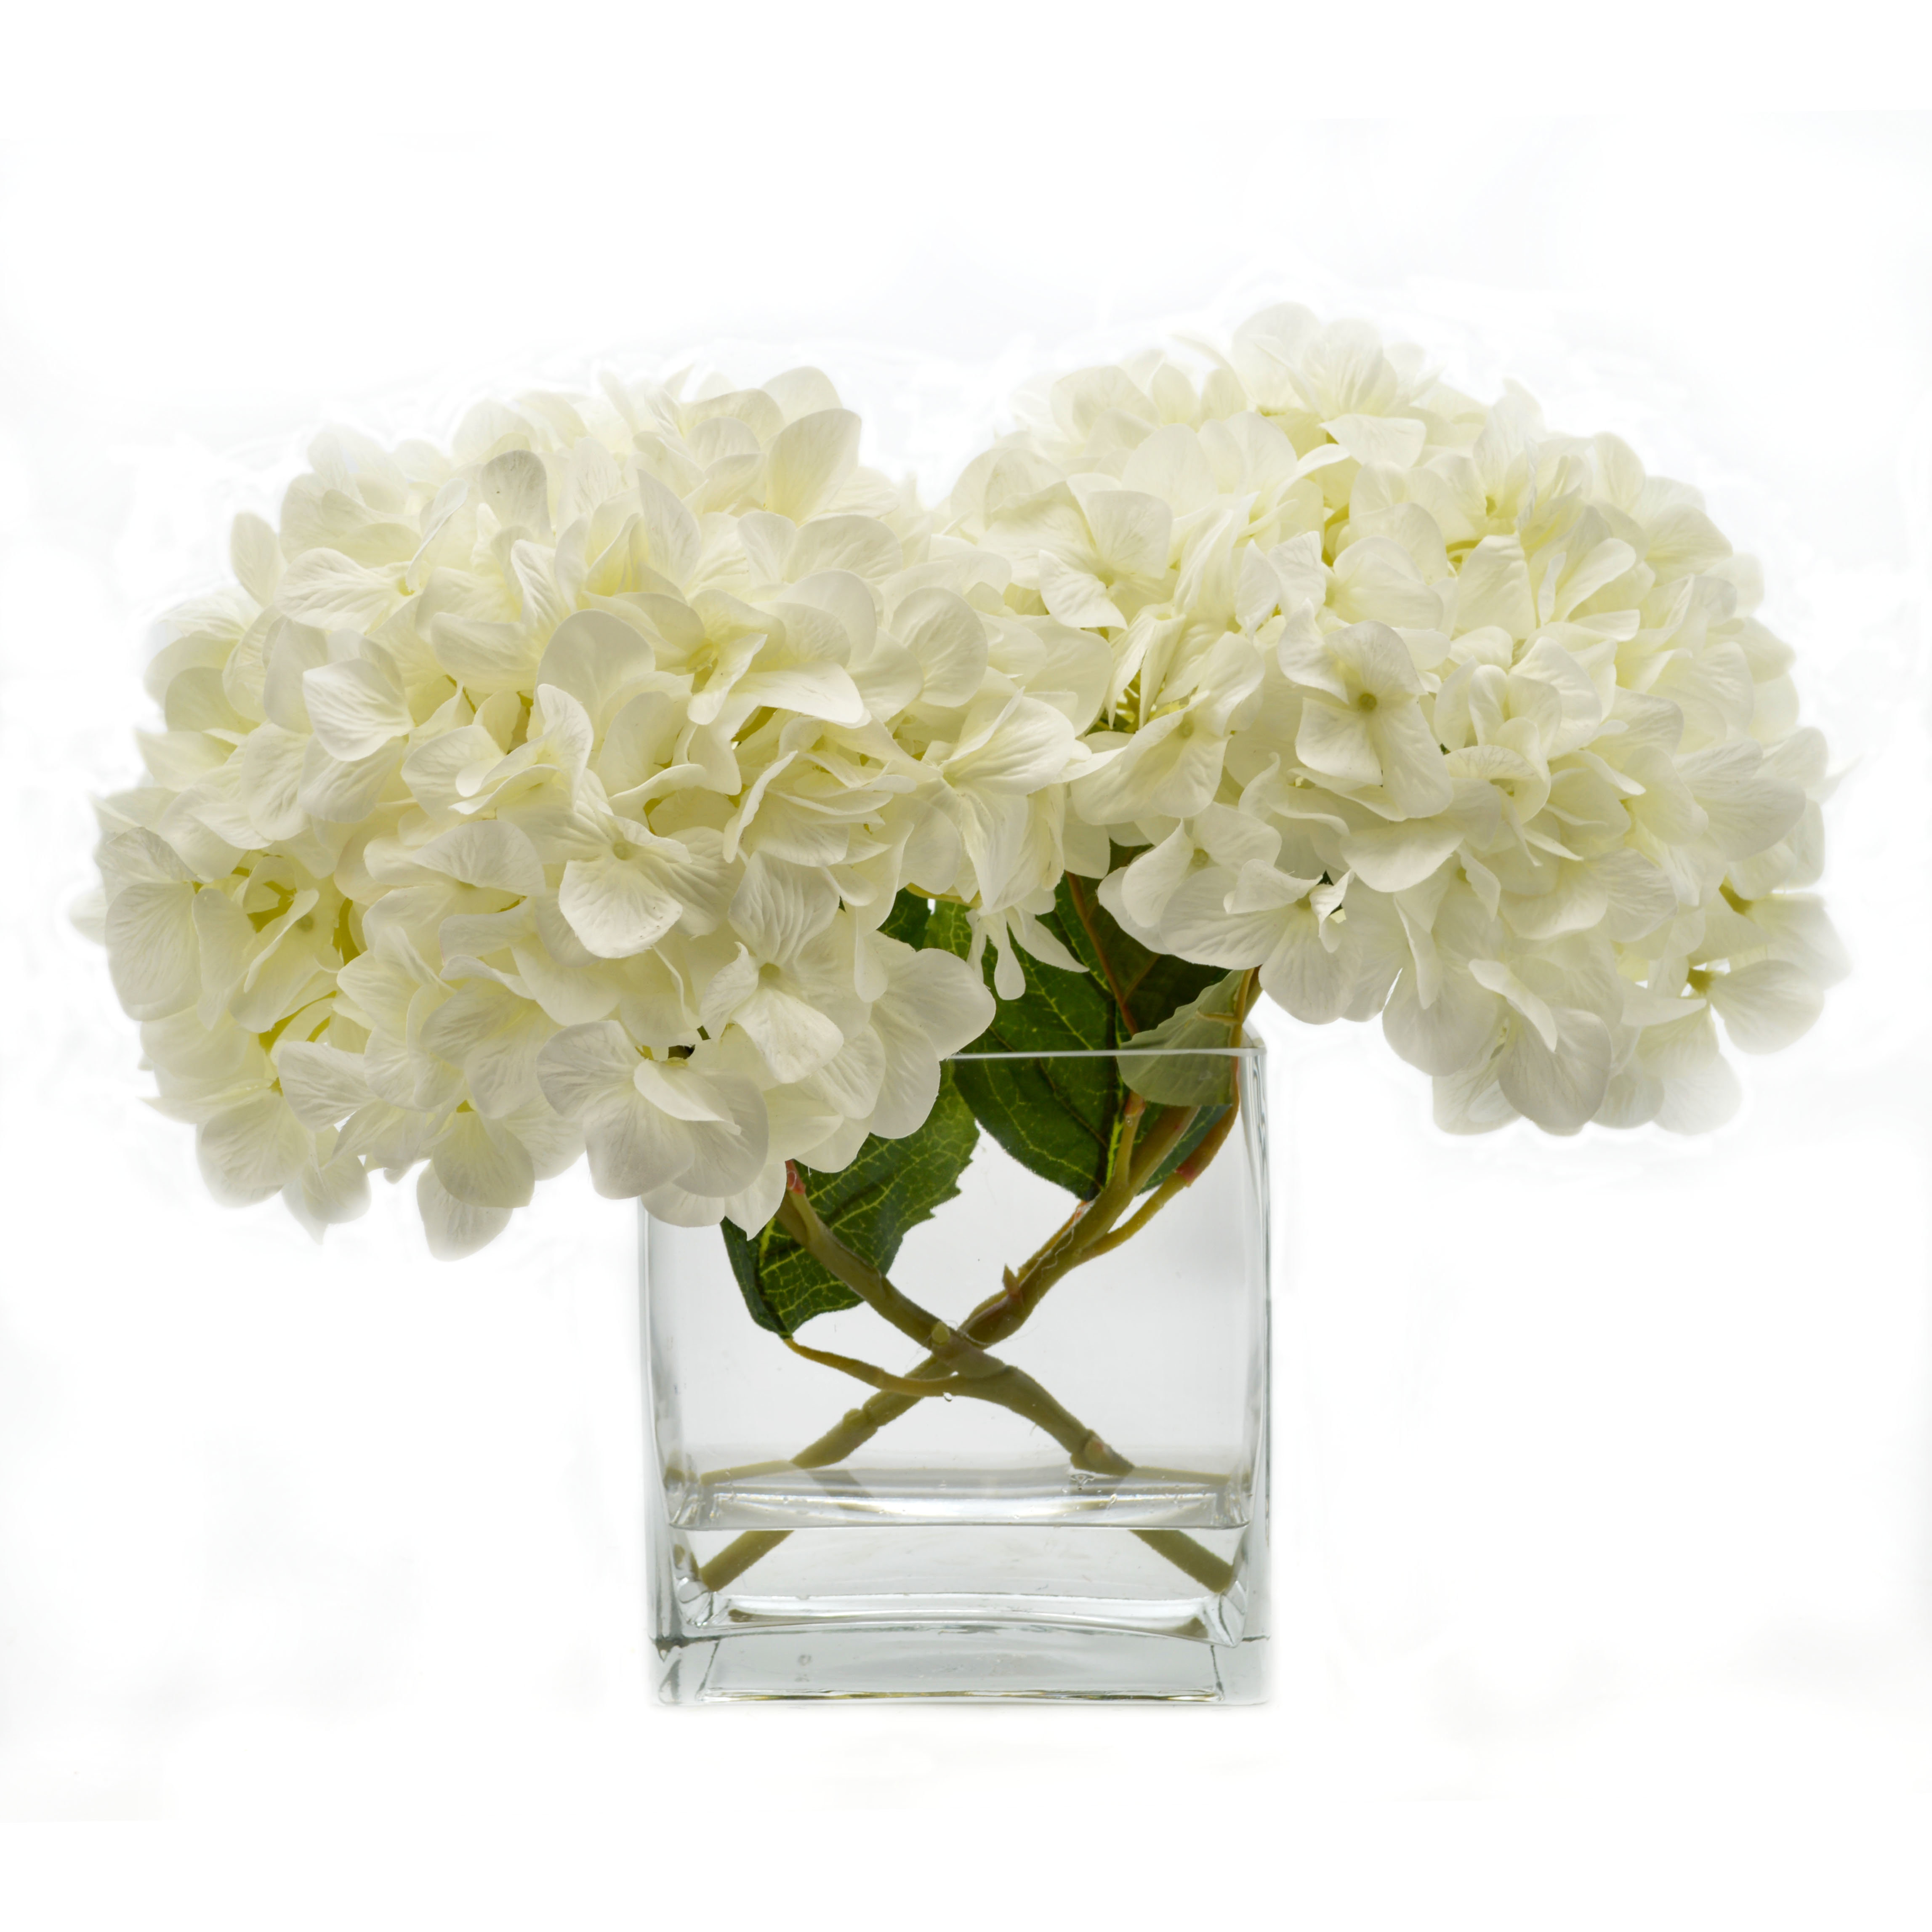 25 Cute Hydrangea In Glass Vase 2024 free download hydrangea in glass vase of faux hydrangea www topsimages com in birch lane faux white hydrangea in glass vase jpg 4590x4590 faux hydrangea